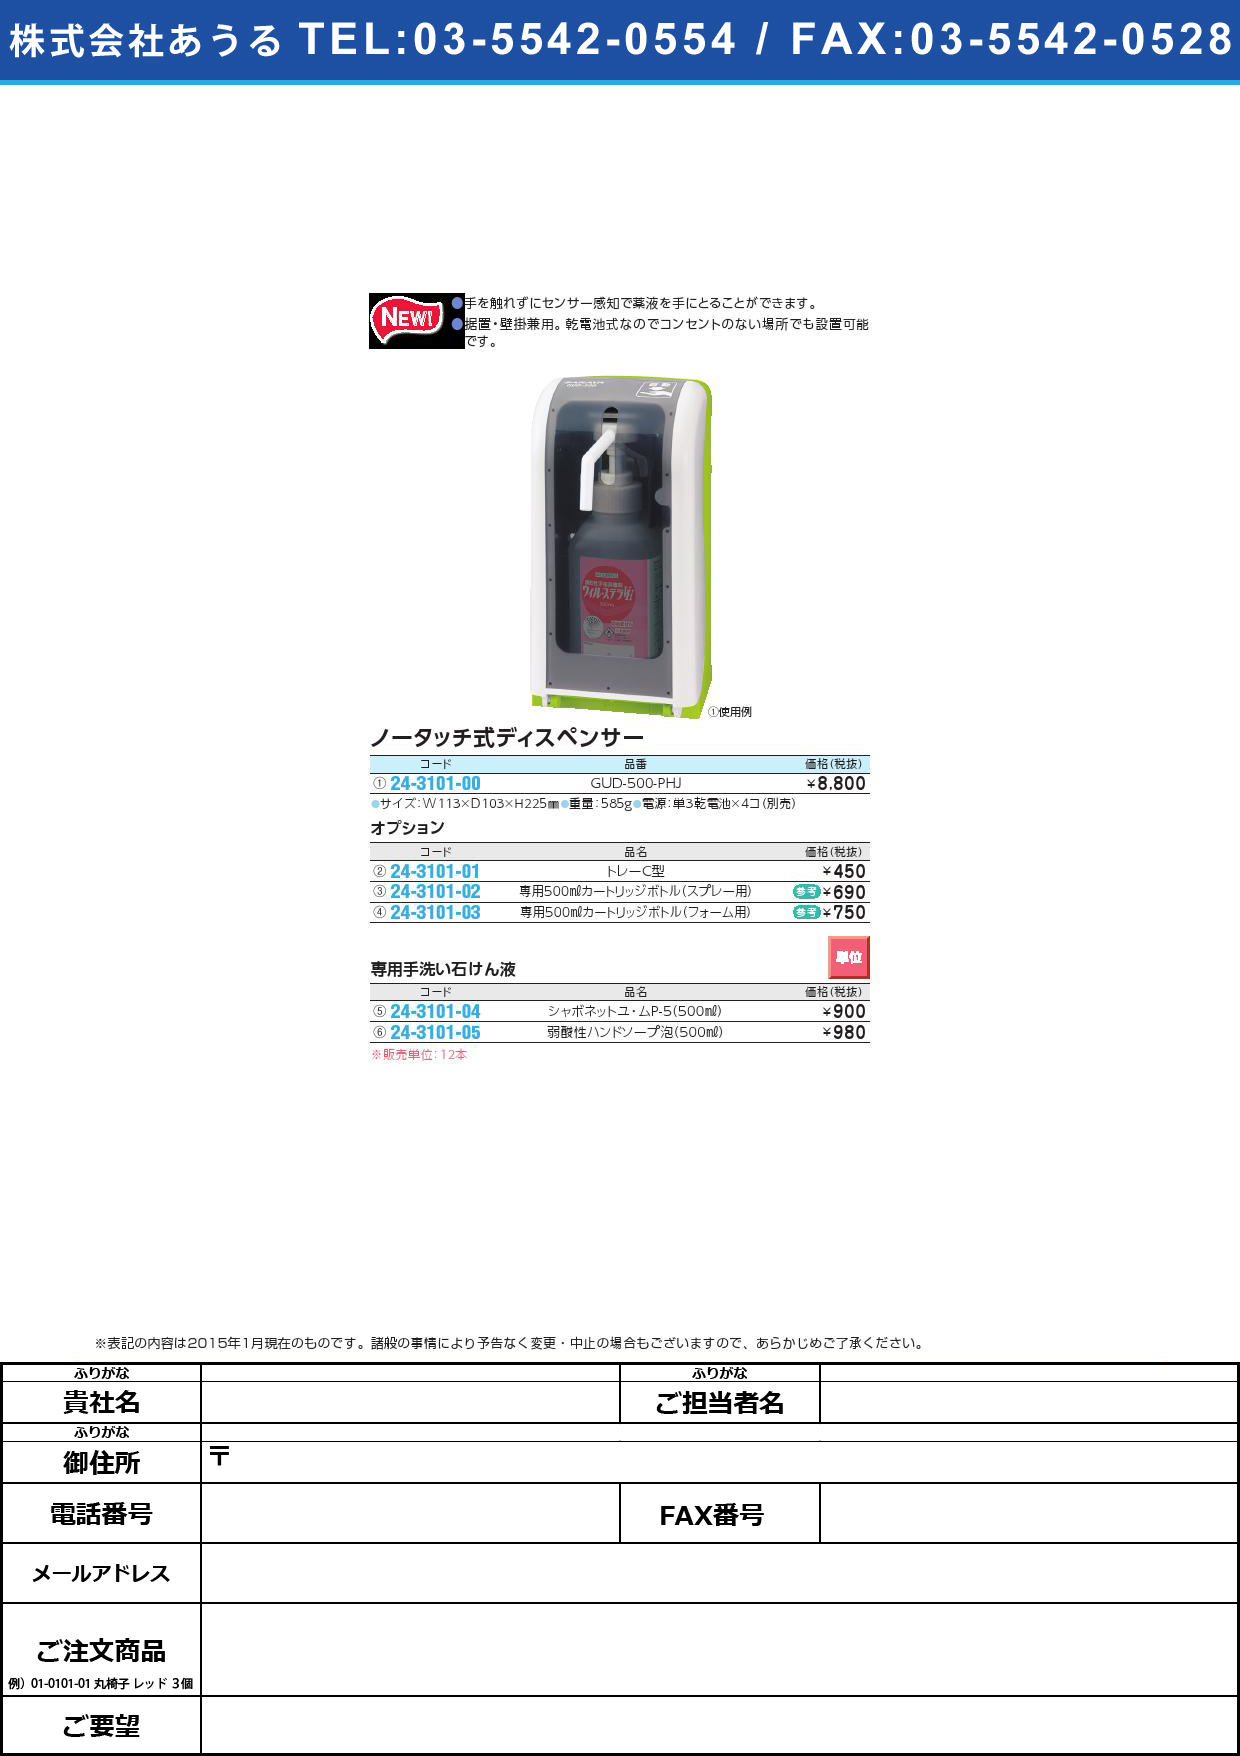 (24-3101-00)ノータッチ式ディスペンサー GUD-500-PHJﾉｰﾀｯﾁｼｷﾃﾞｨｽﾍﾟﾝｻｰ(24-3101-00)【1台単位】【2015年カタログ商品】